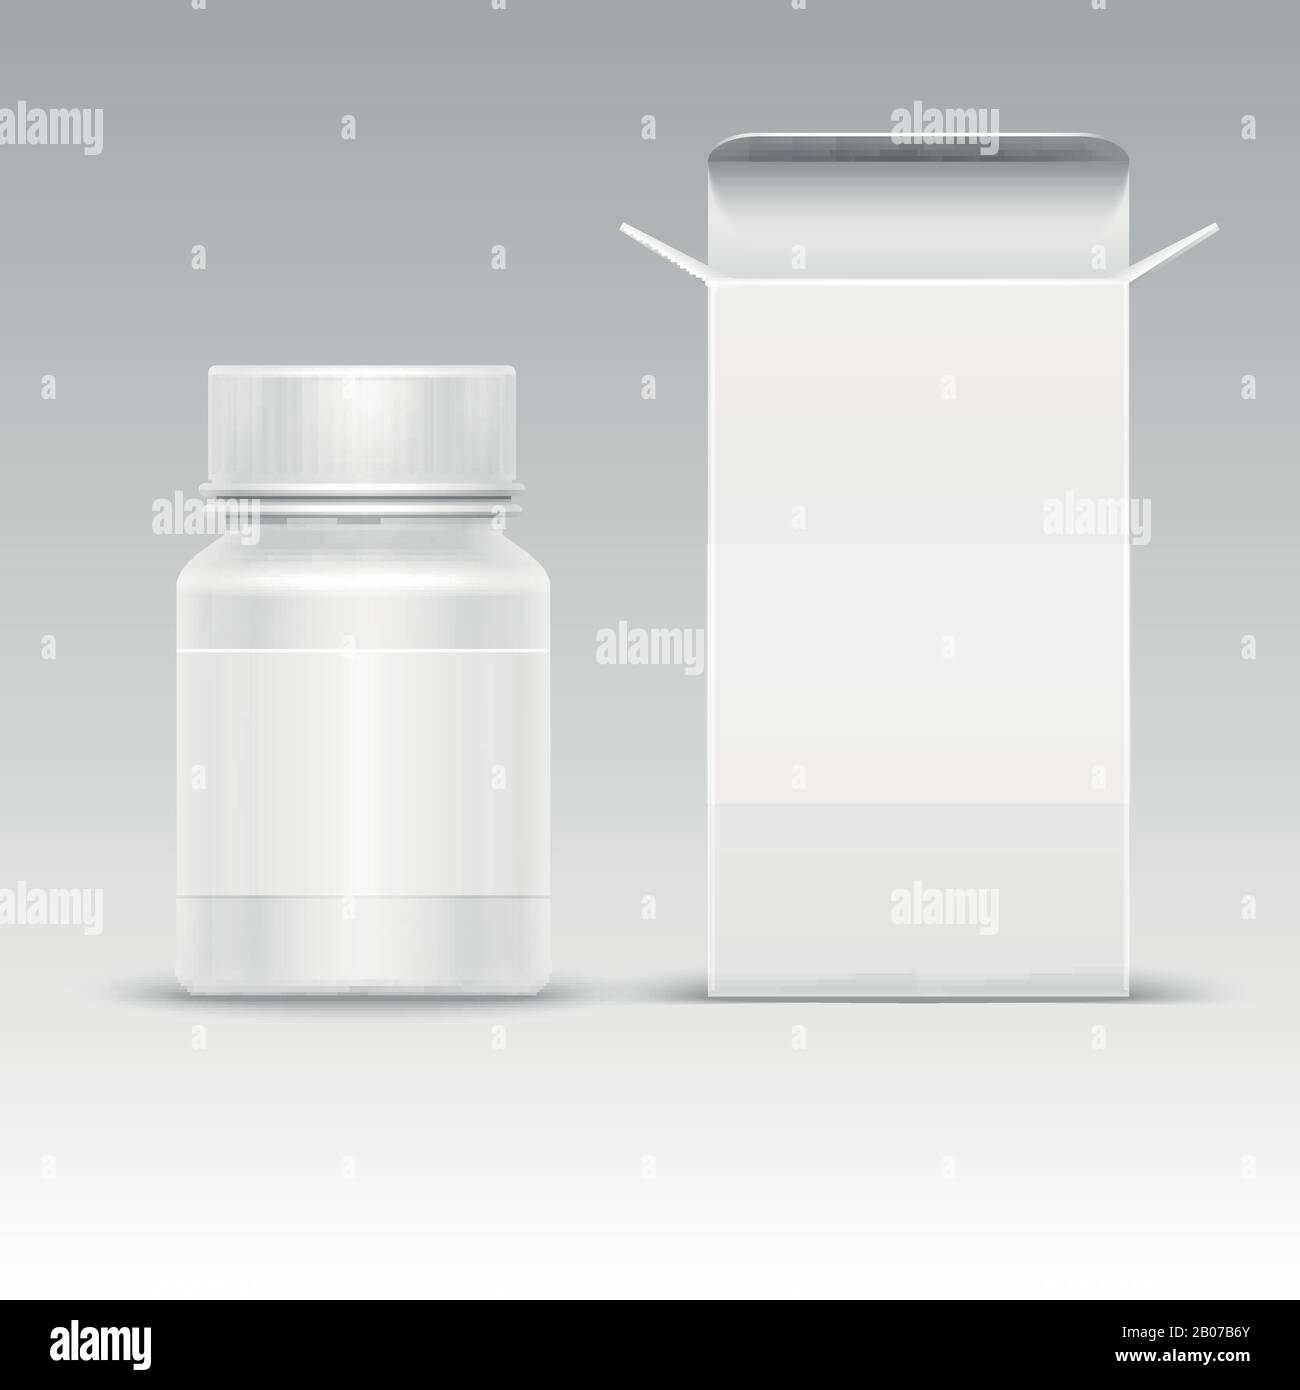 Boîte en papier d'emballage blanc médical et flacon en plastique médical pour pilules isolées sur illustration vectorielle blanche. Mockup de conteneur pour comprimé et médicament Illustration de Vecteur